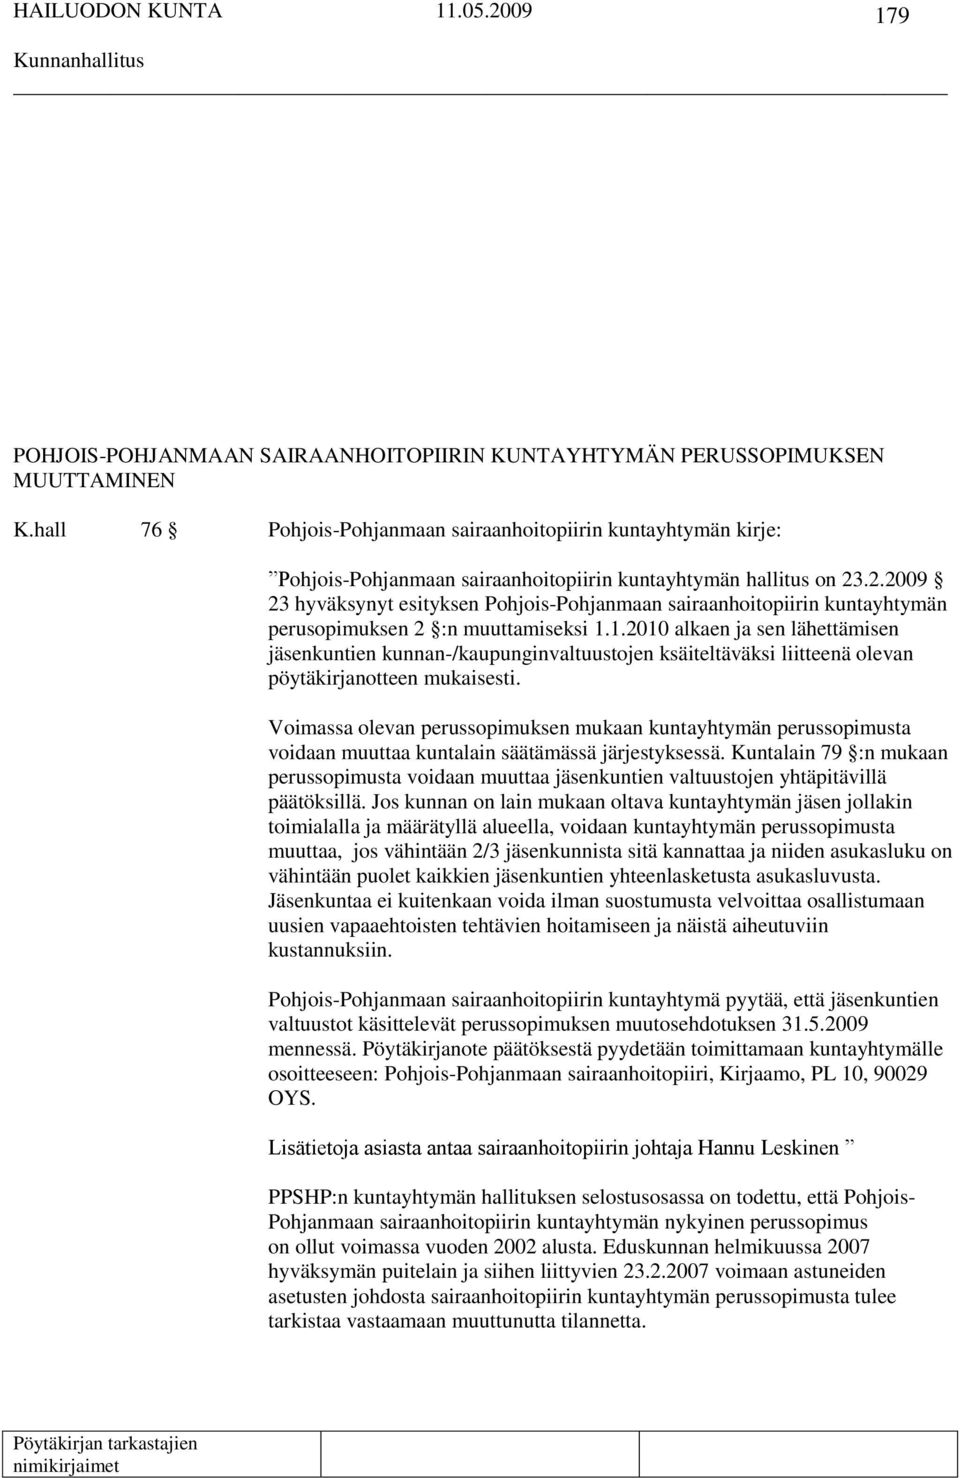 .2.2009 23 hyväksynyt esityksen Pohjois-Pohjanmaan sairaanhoitopiirin kuntayhtymän perusopimuksen 2 :n muuttamiseksi 1.